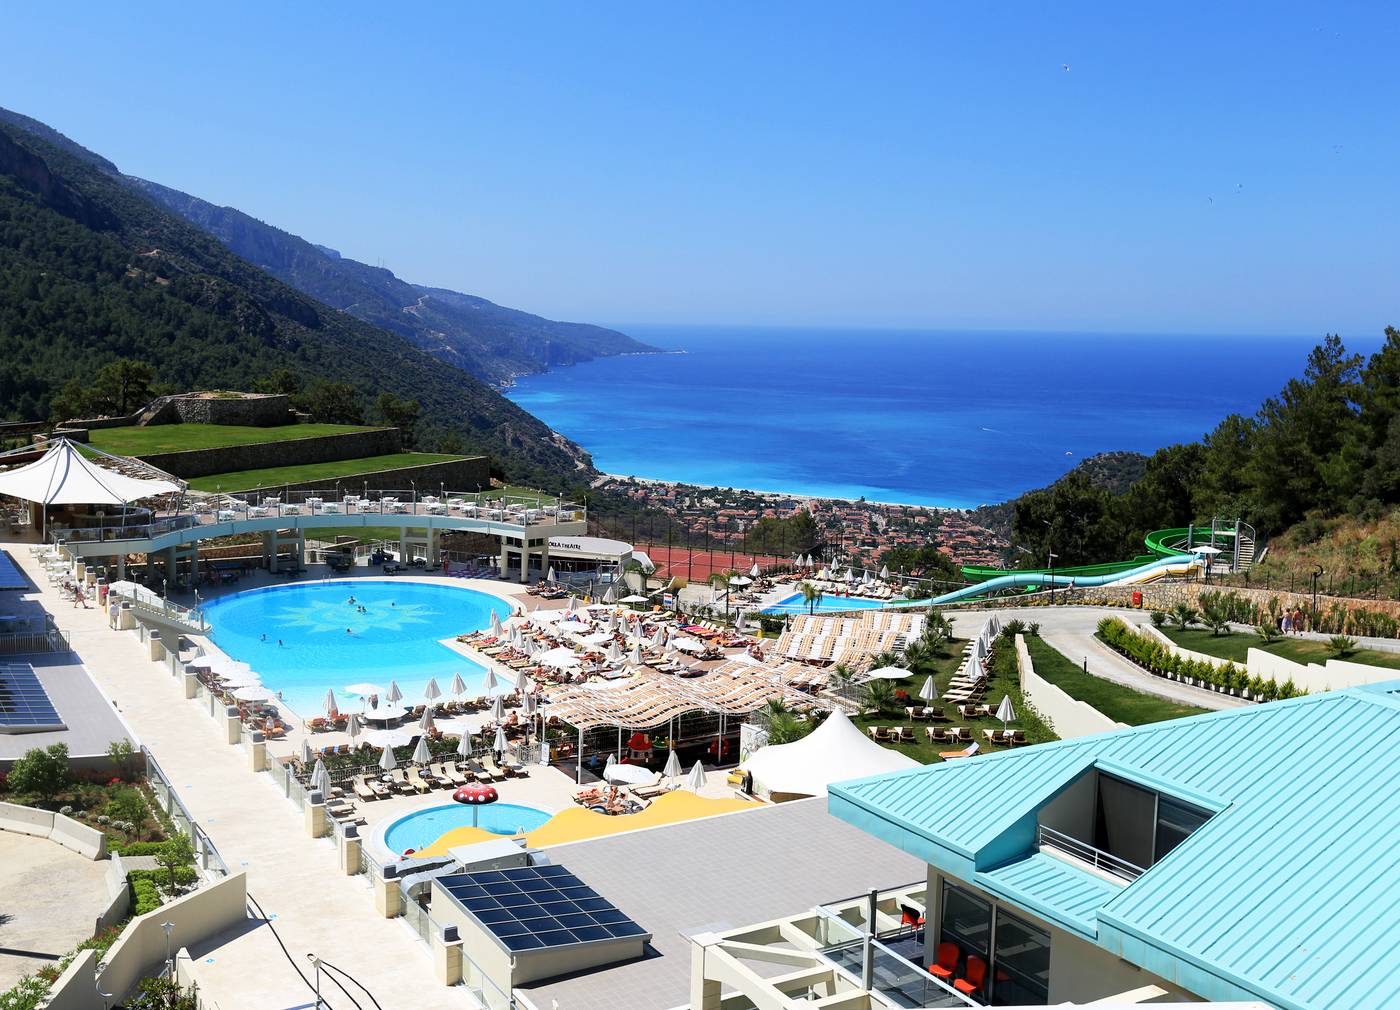 Orka Sunlife Resort And Spa in Dalaman, Tenerife, Turkey